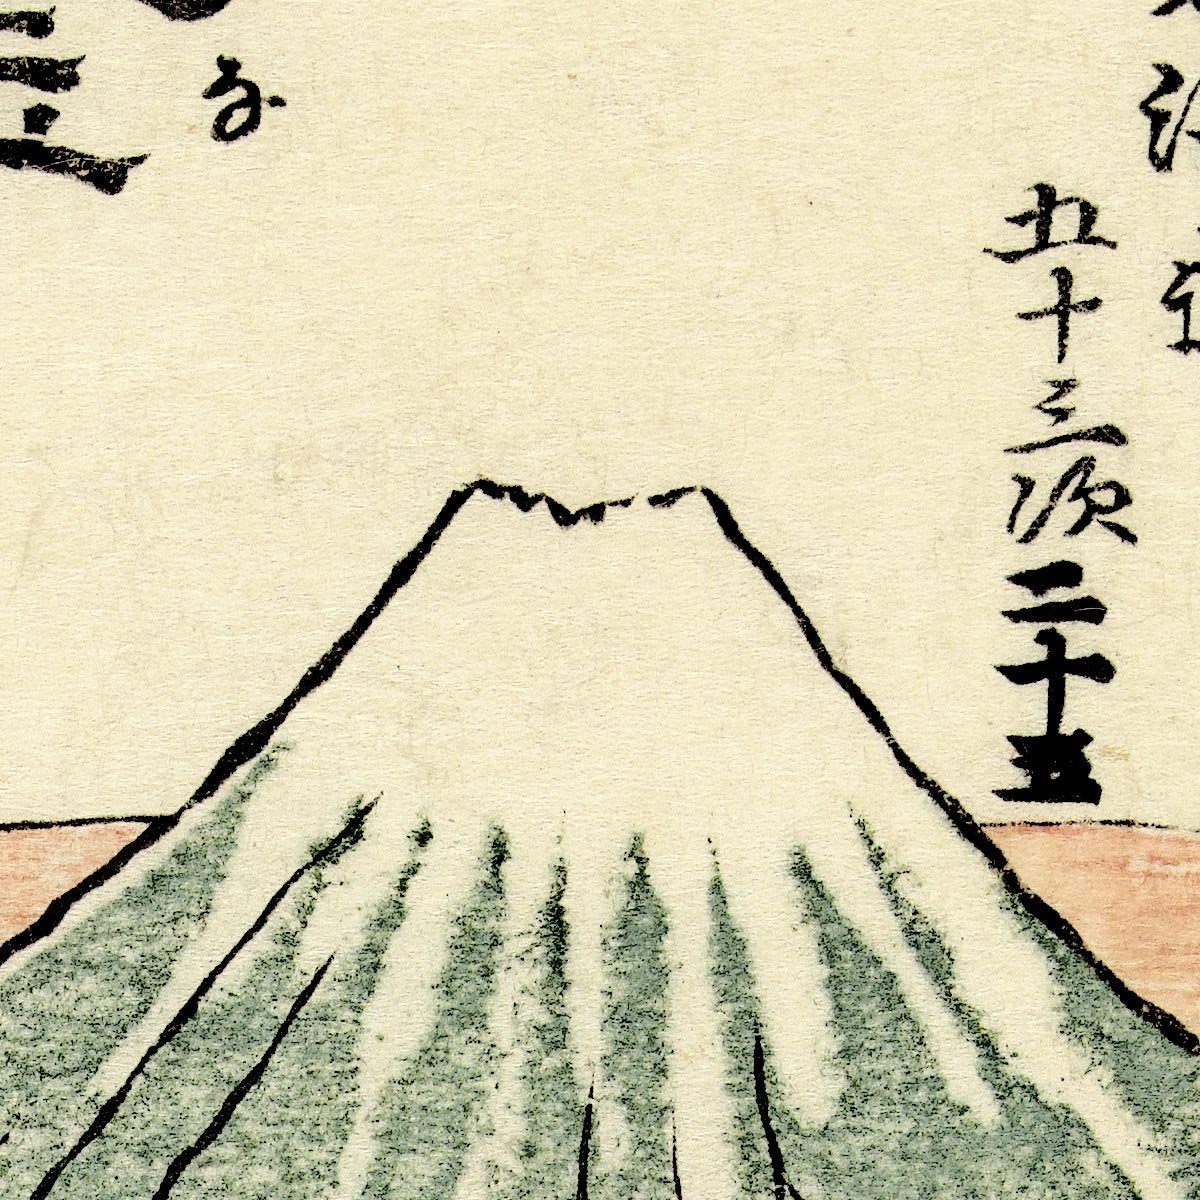 Kanaya at 25th Station by Hokusai